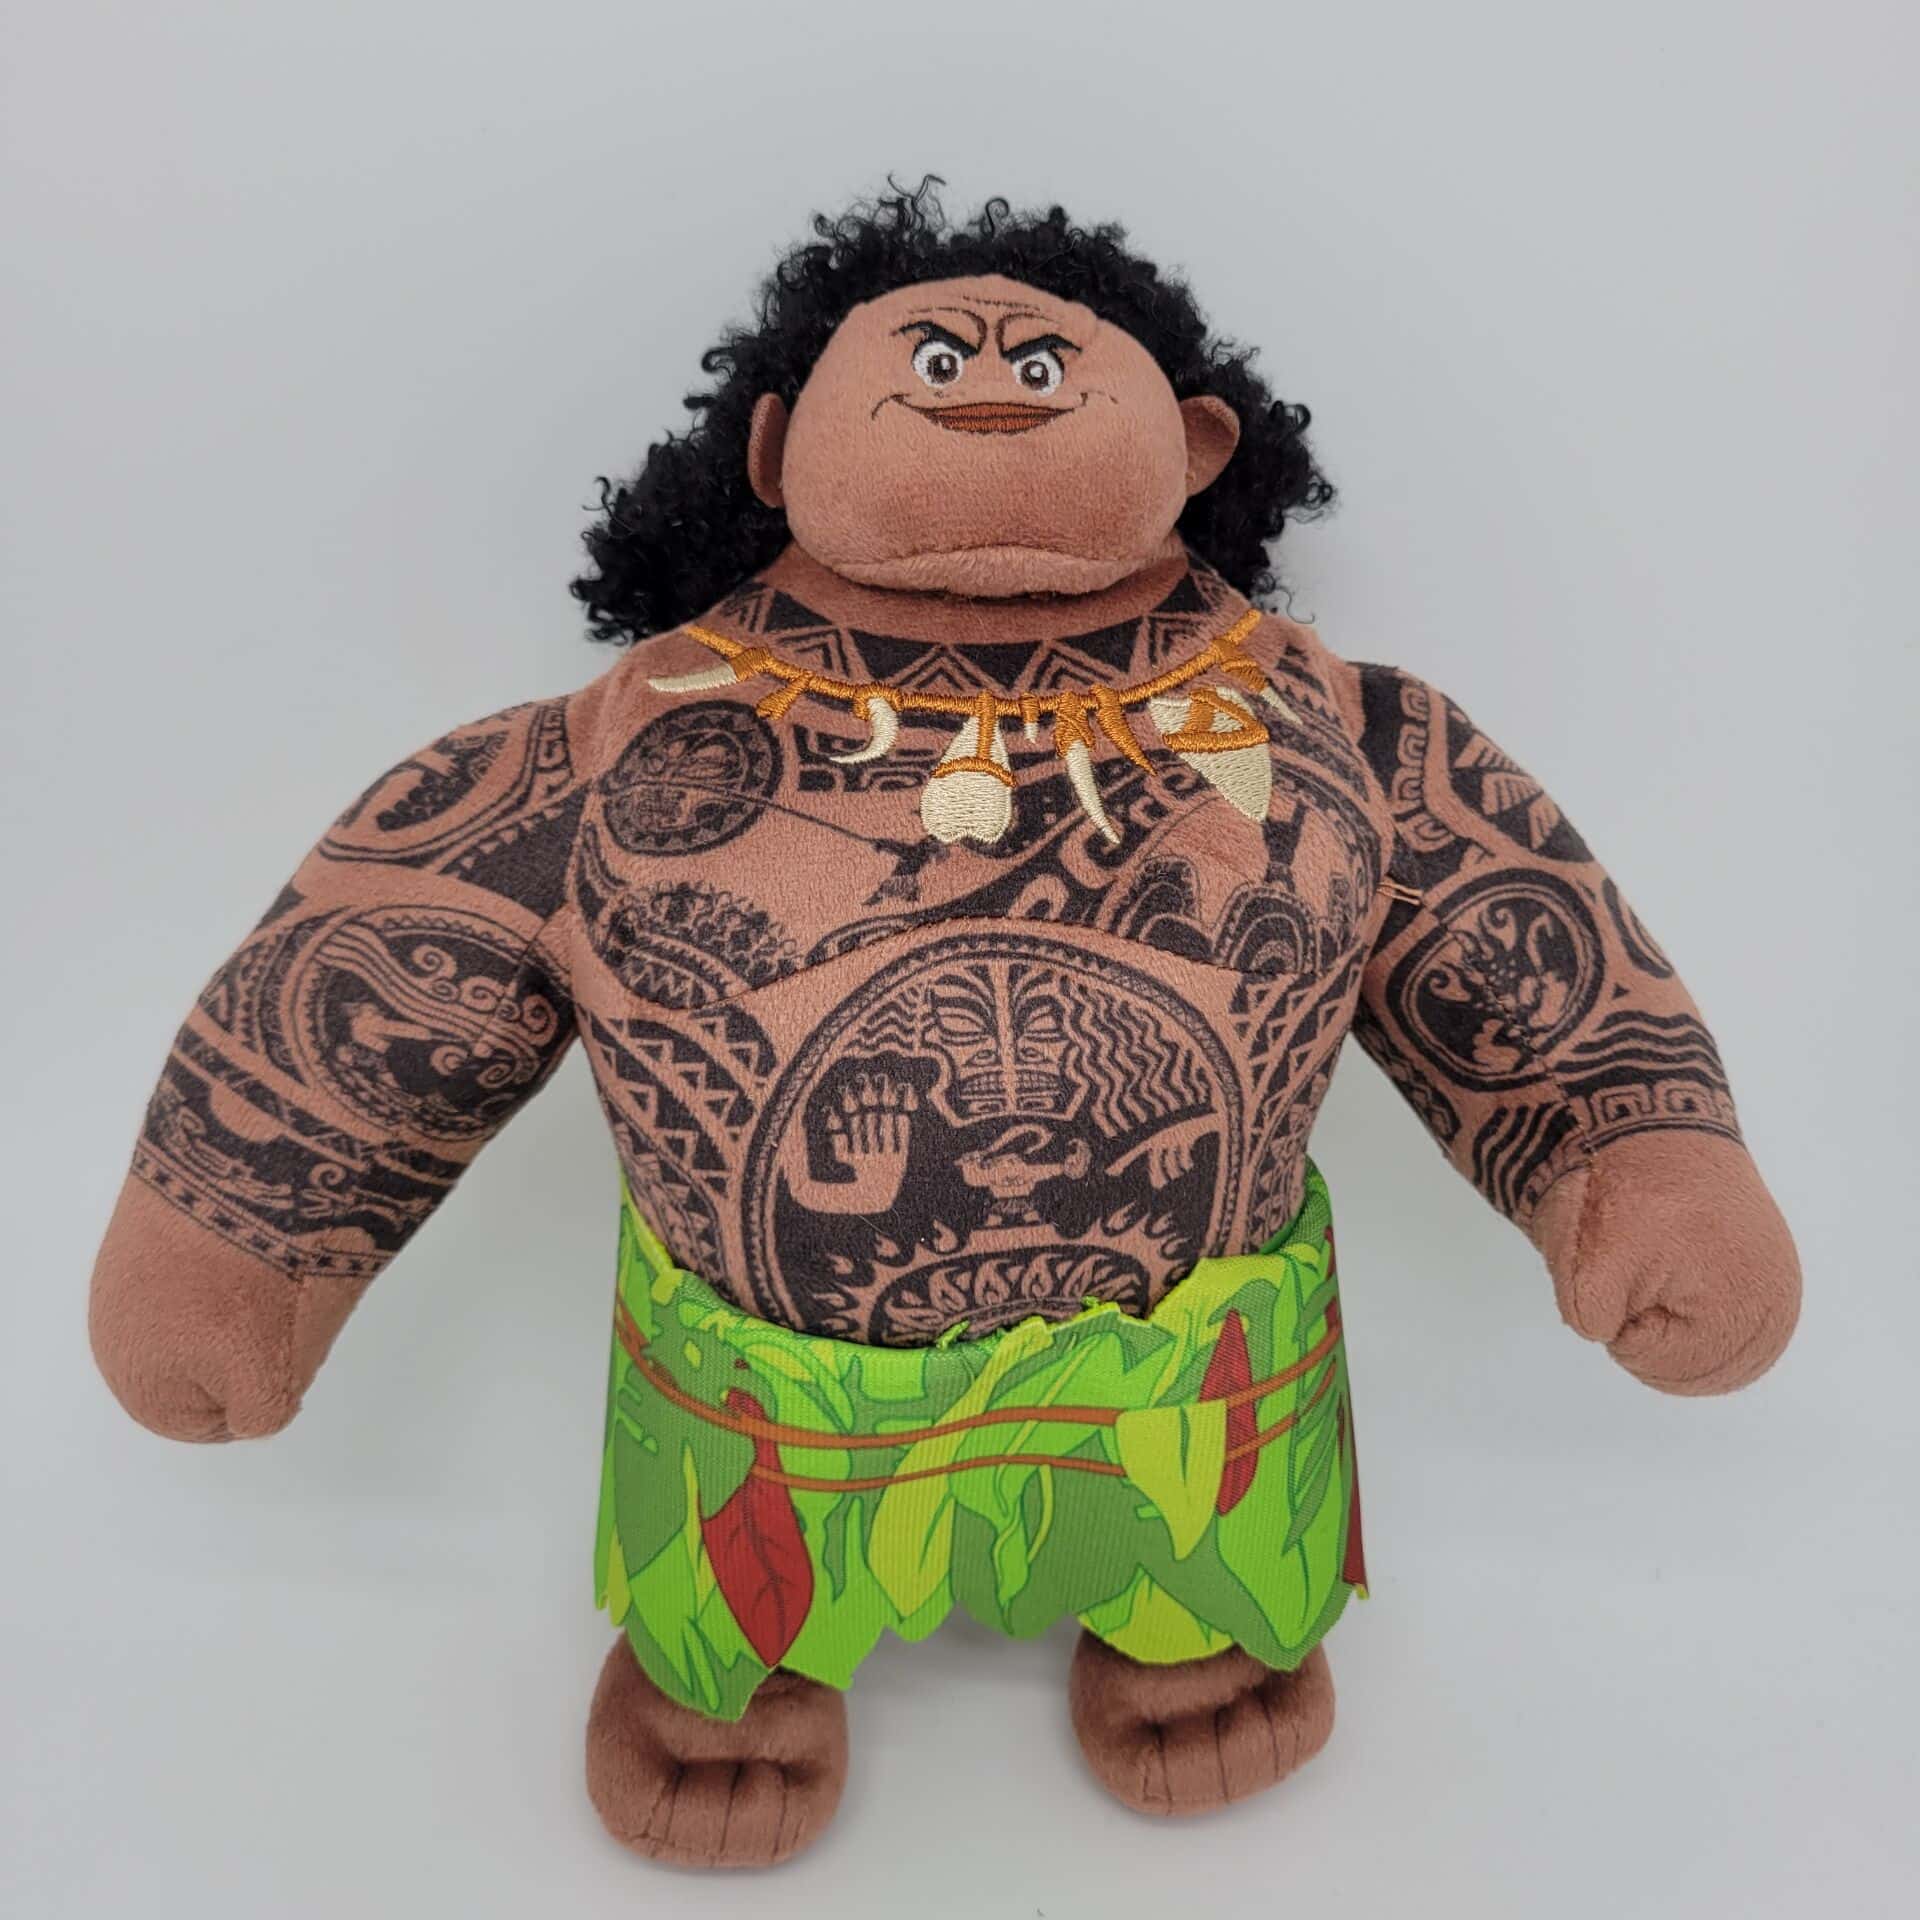 Fully tattooed Moana Maui plush from the Disney cartoon